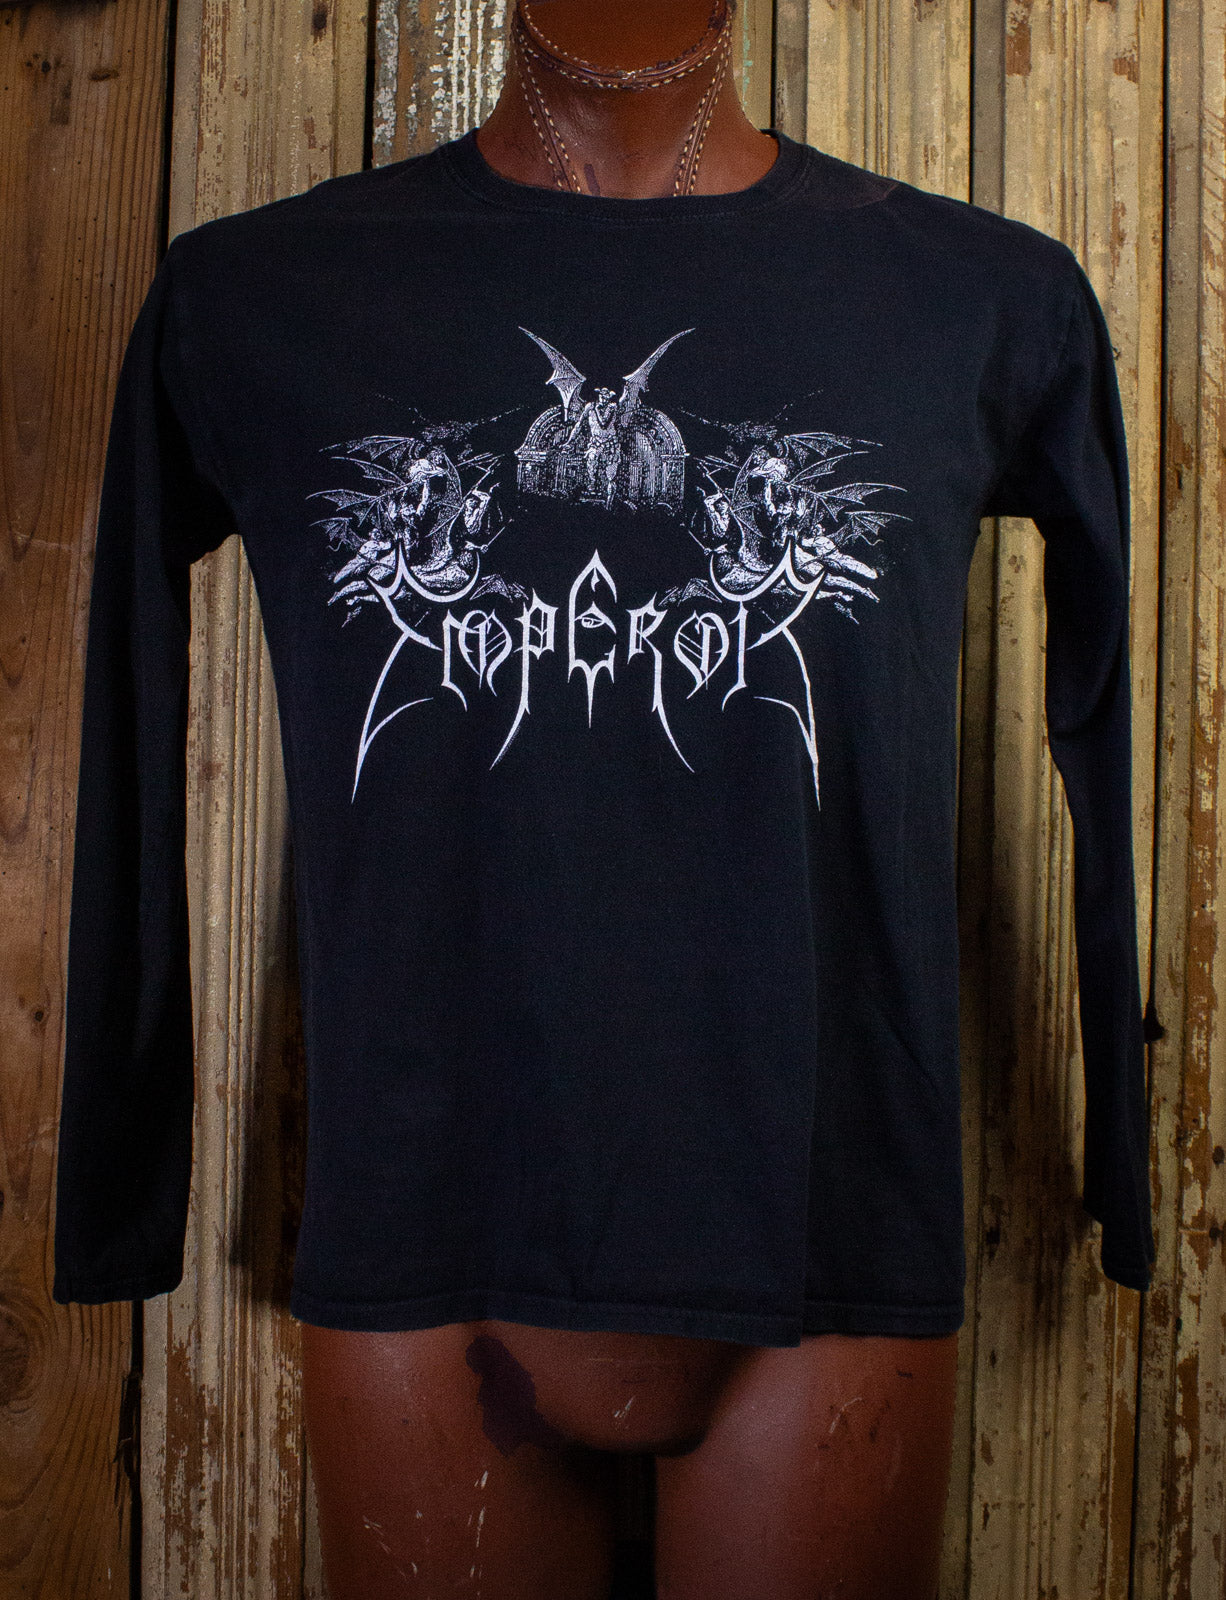 Emperor Inno A Satana Long Sleeve Concert T shirt 1992 Black Medium